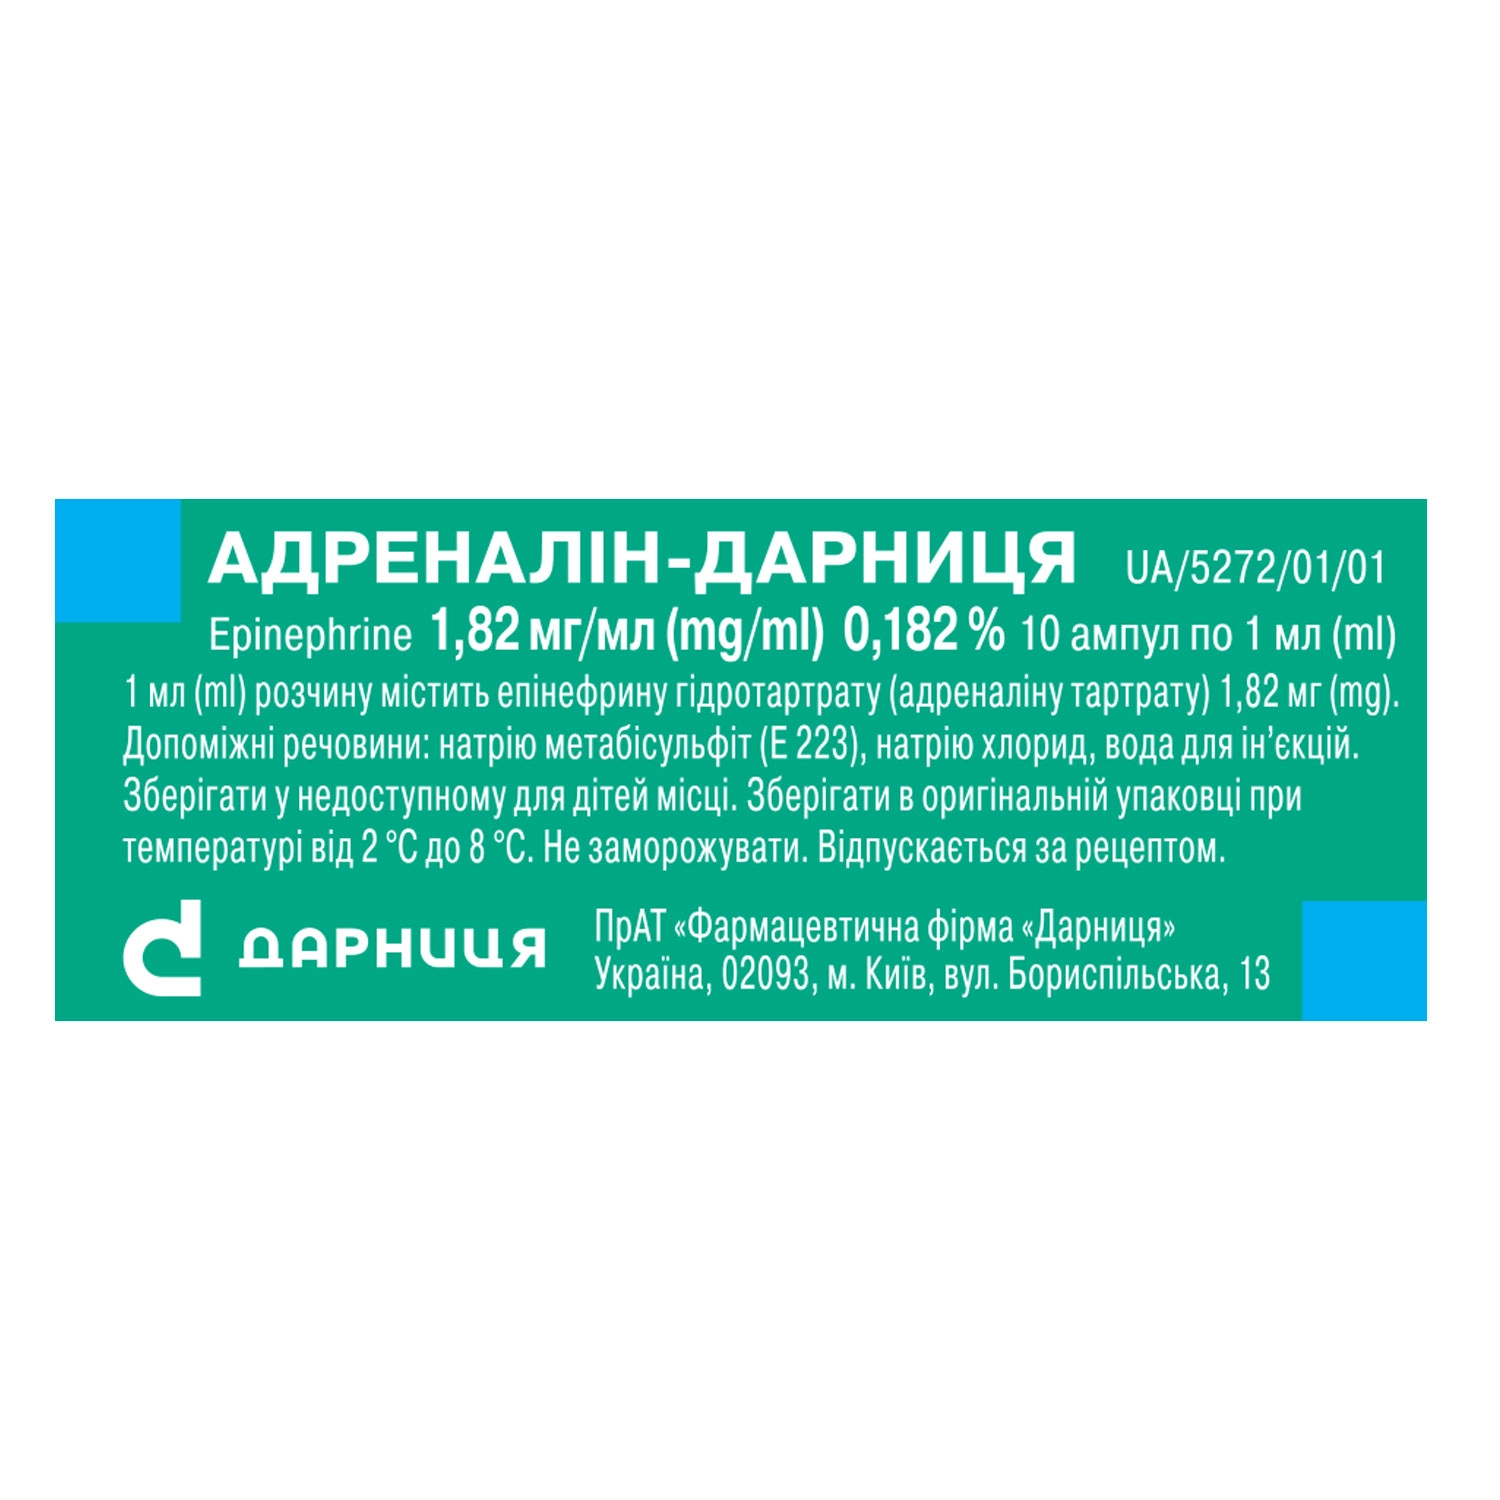 Adrenalin-Darnitsa «Darnytsia» pharmaceutical company